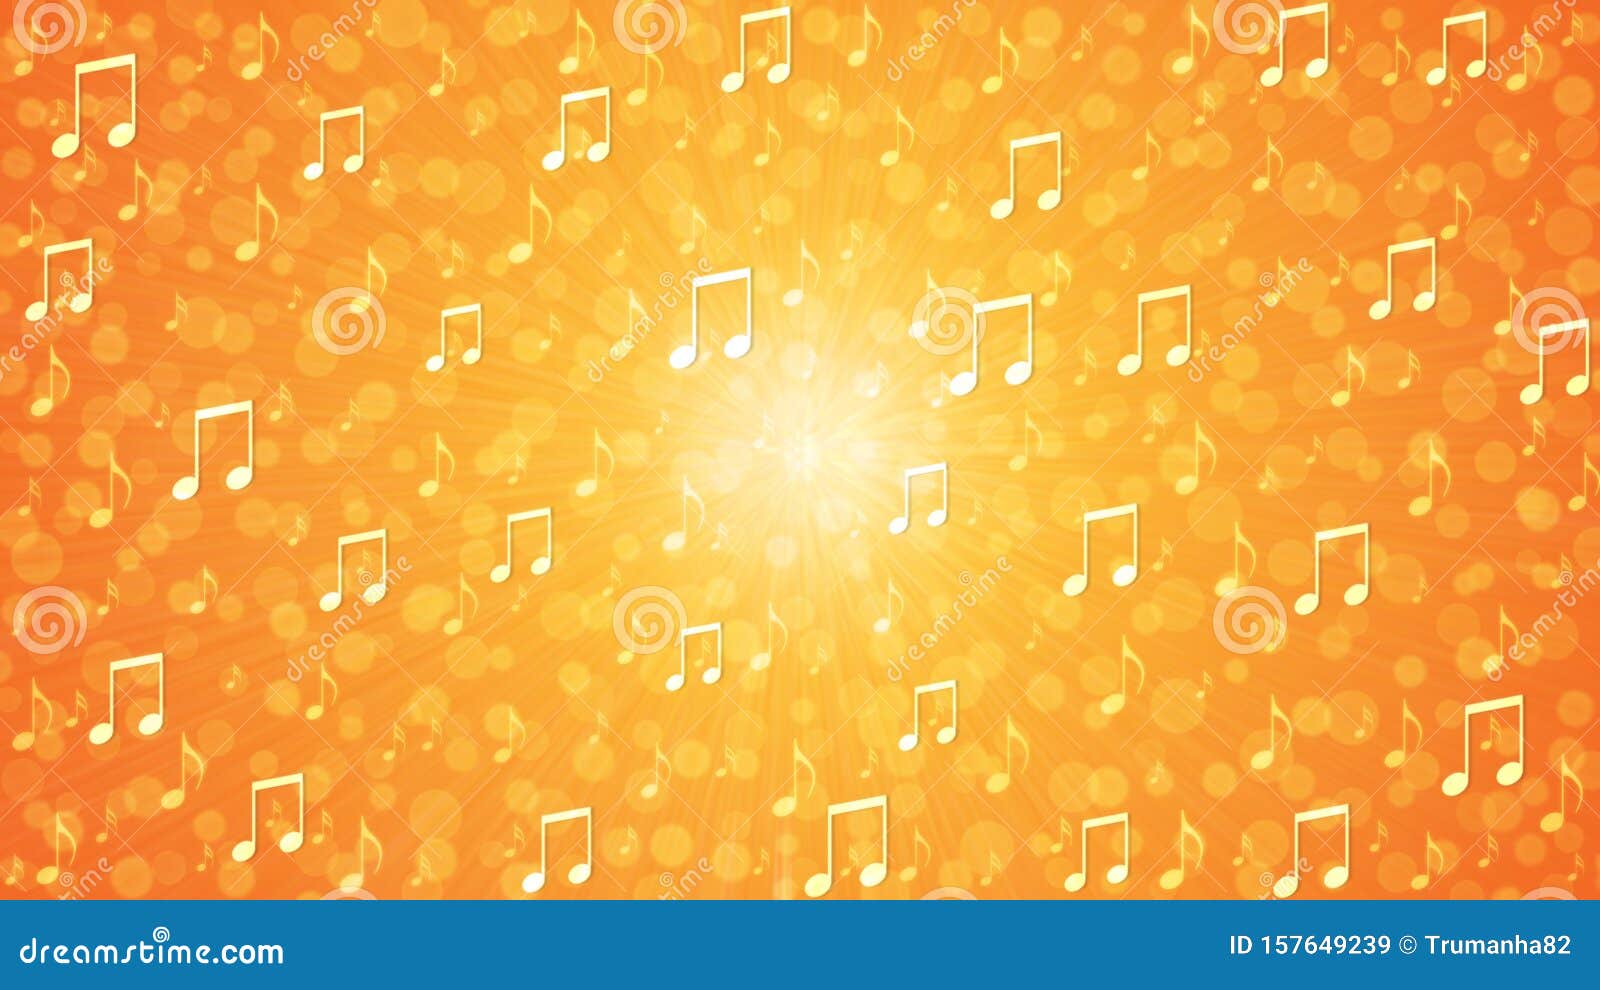 Với sự pha trộn giữa âm thanh cam và vàng trừu tượng, nền nhạc vang cam và vàng trừu tượng sẽ mang đến cho bạn một trải nghiệm âm nhạc đầy sáng tạo. Kết hợp với hình ảnh đẹp, âm nhạc này sẽ khiến cho bạn cảm thấy như mình đang sống trong một trải nghiệm hơn là chỉ đơn giản là đang xem video.